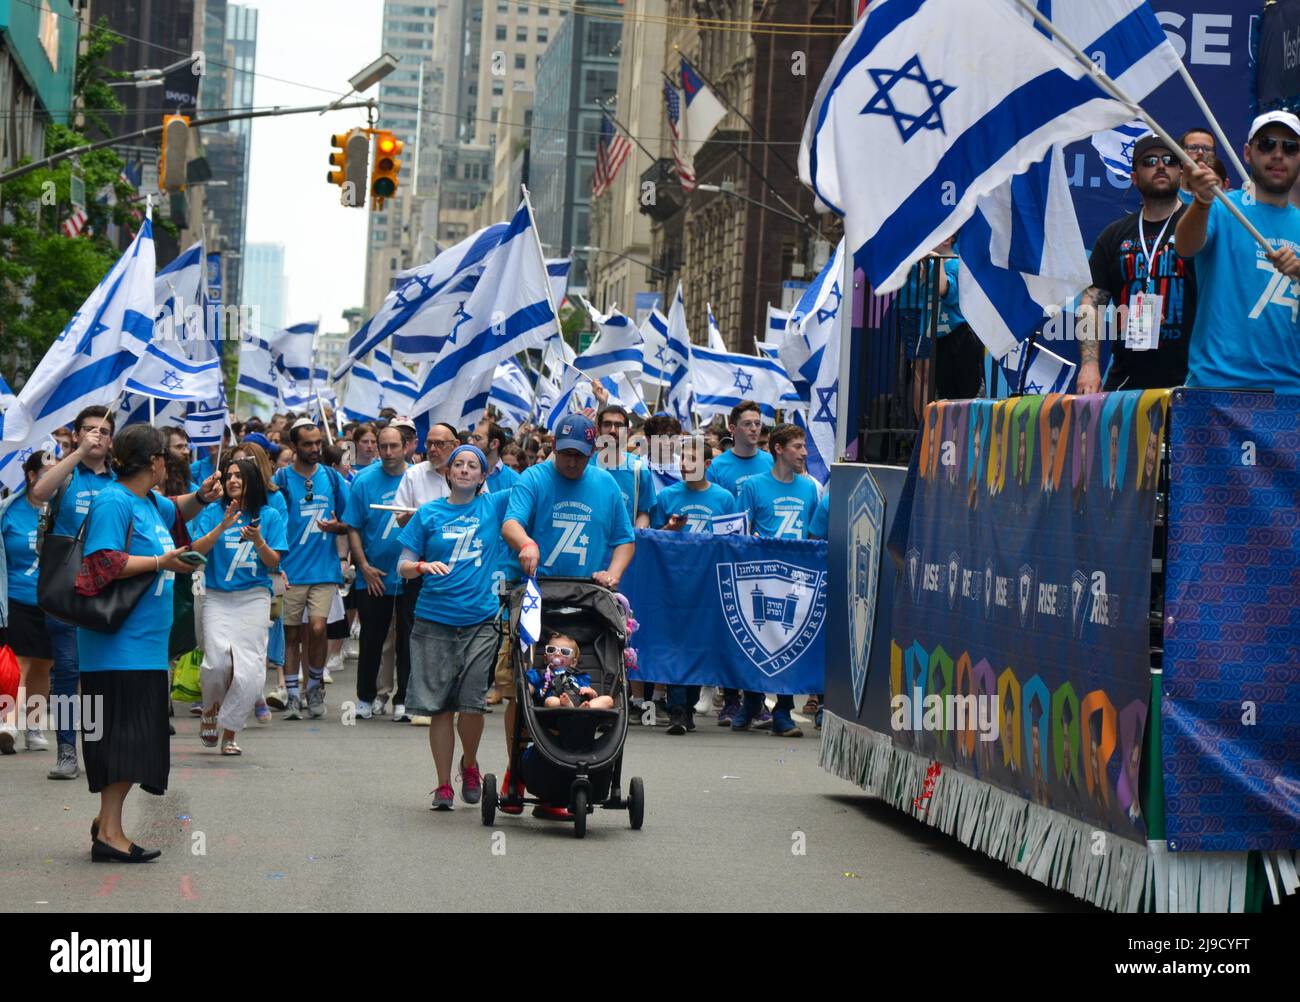 Die Teilnehmer werden während der Parade in New York City gesehen, um den 74.. Jahrestag der Gründung der israelischen Nation am 22. Mai 2022 zu feiern. Stockfoto